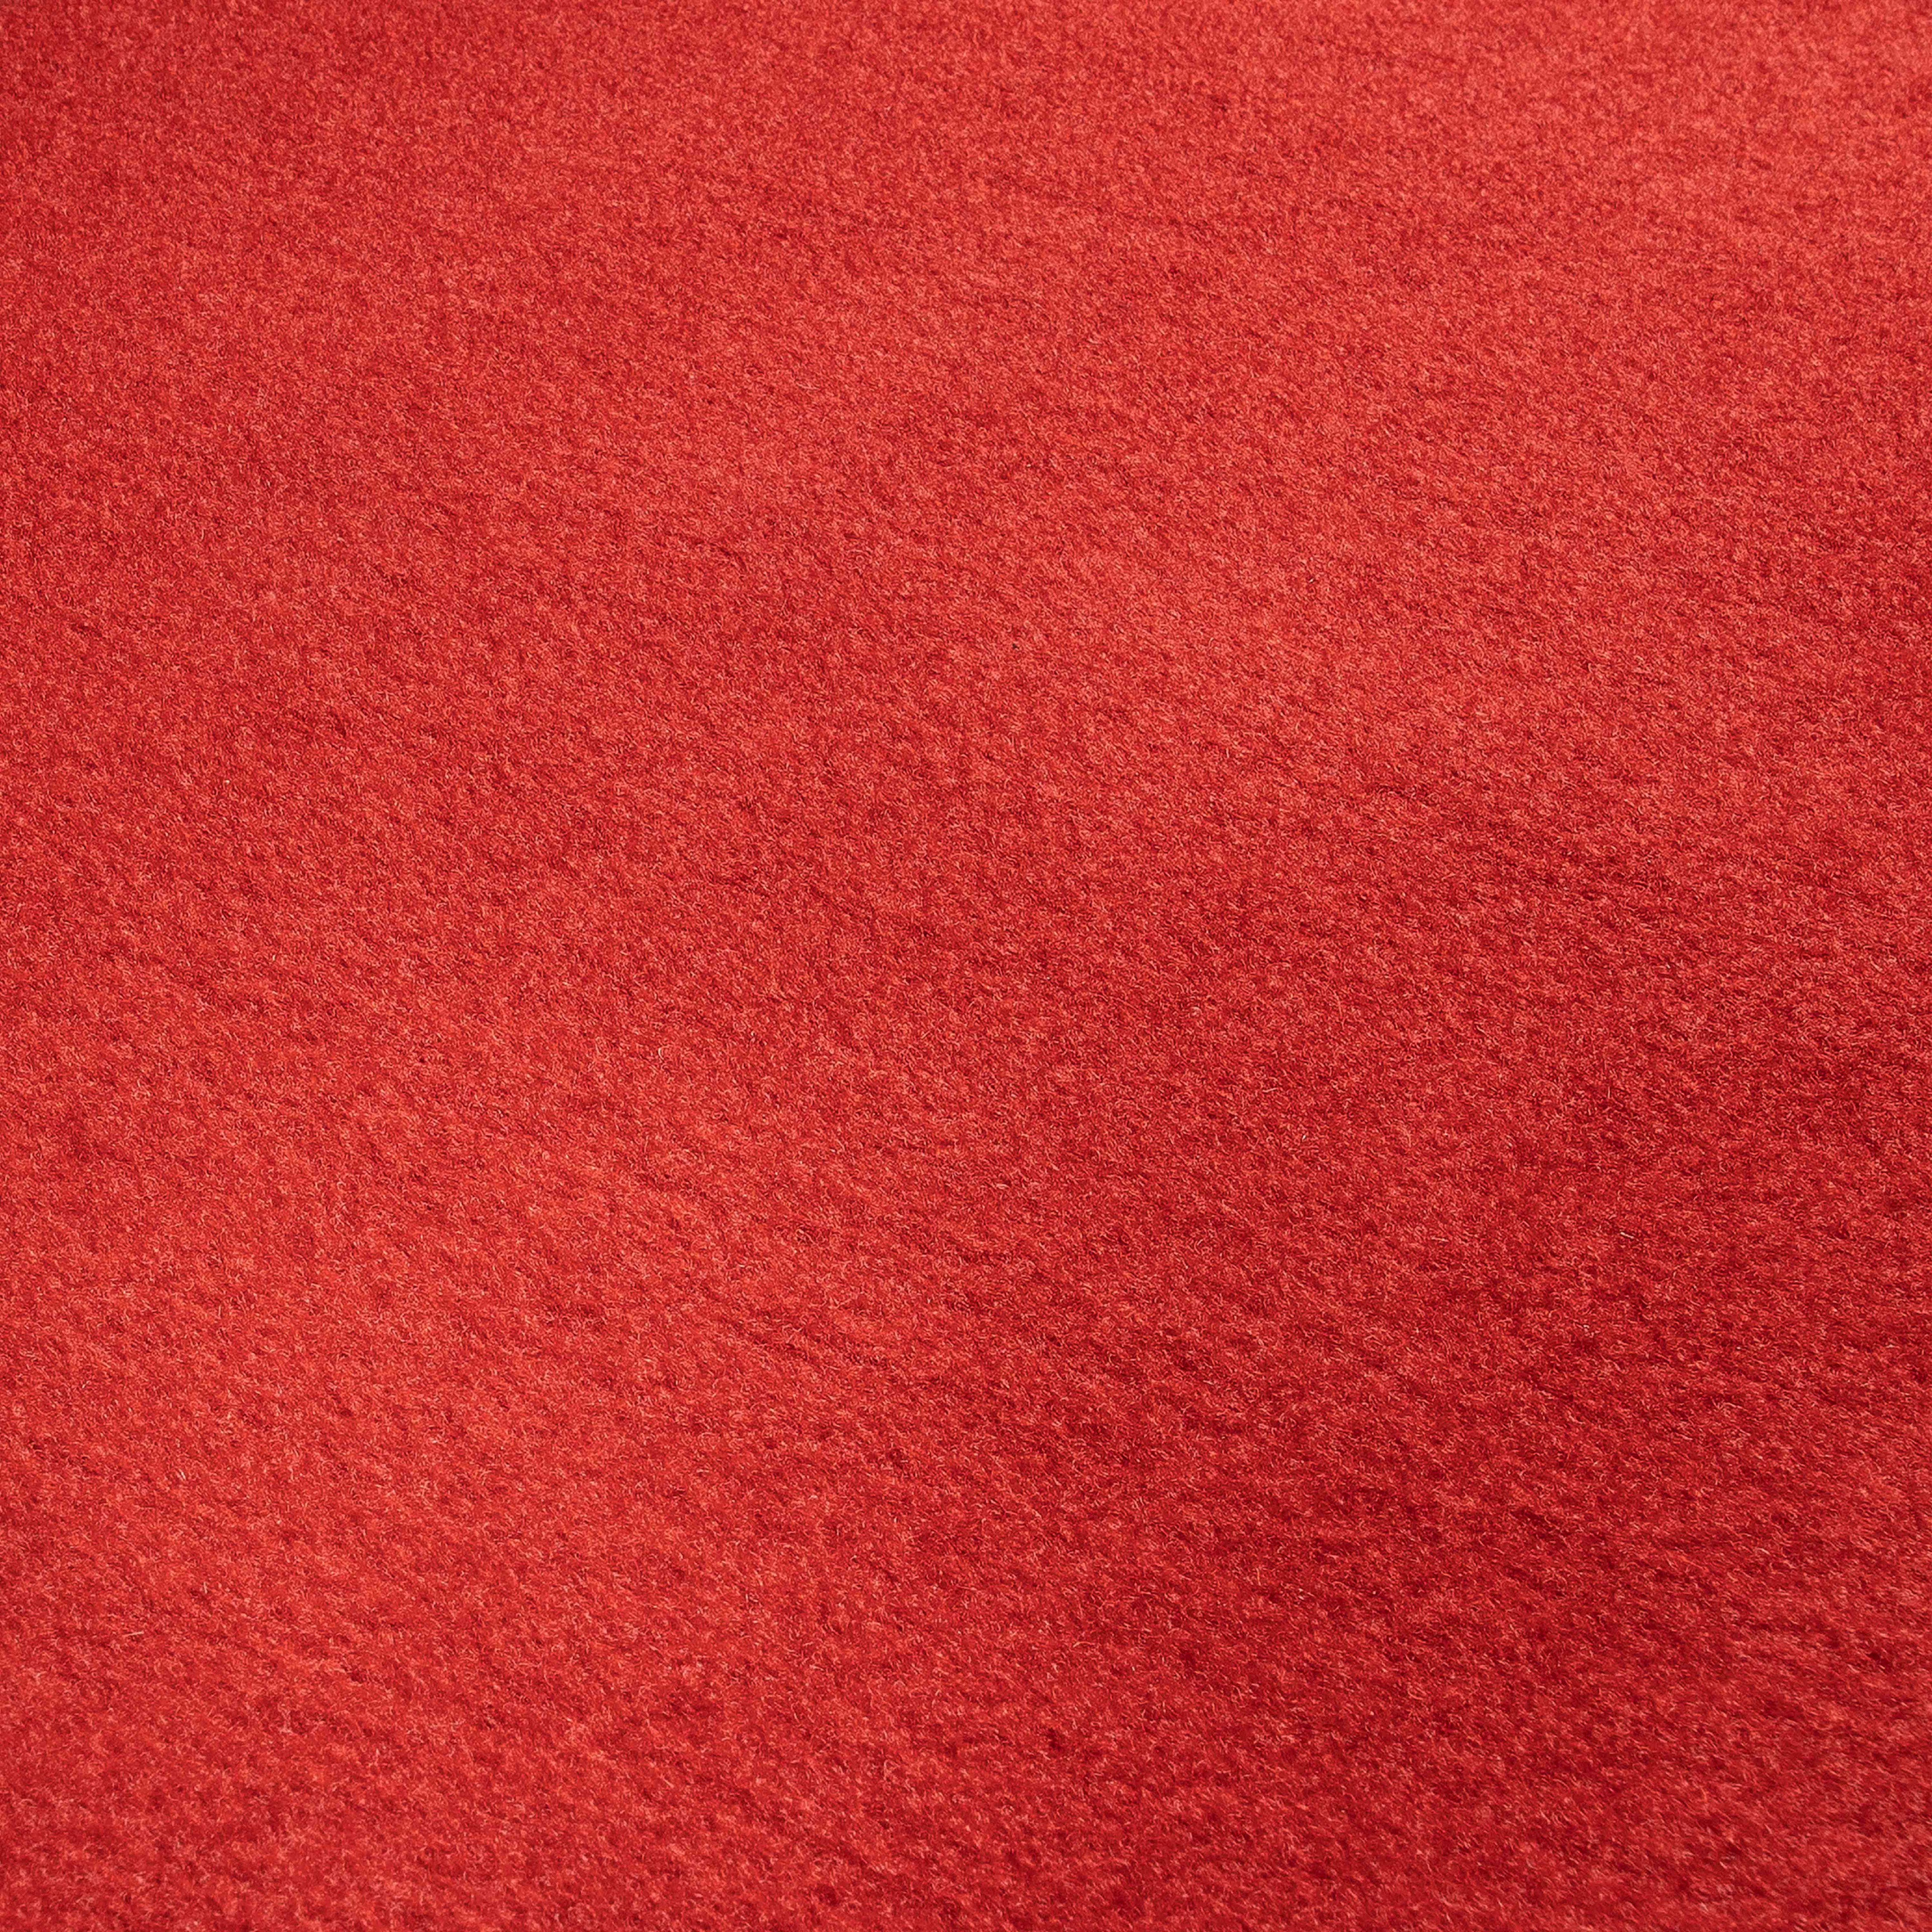 Rouleau de moquette rouge de 1 x 5m en polyester 250g/m²